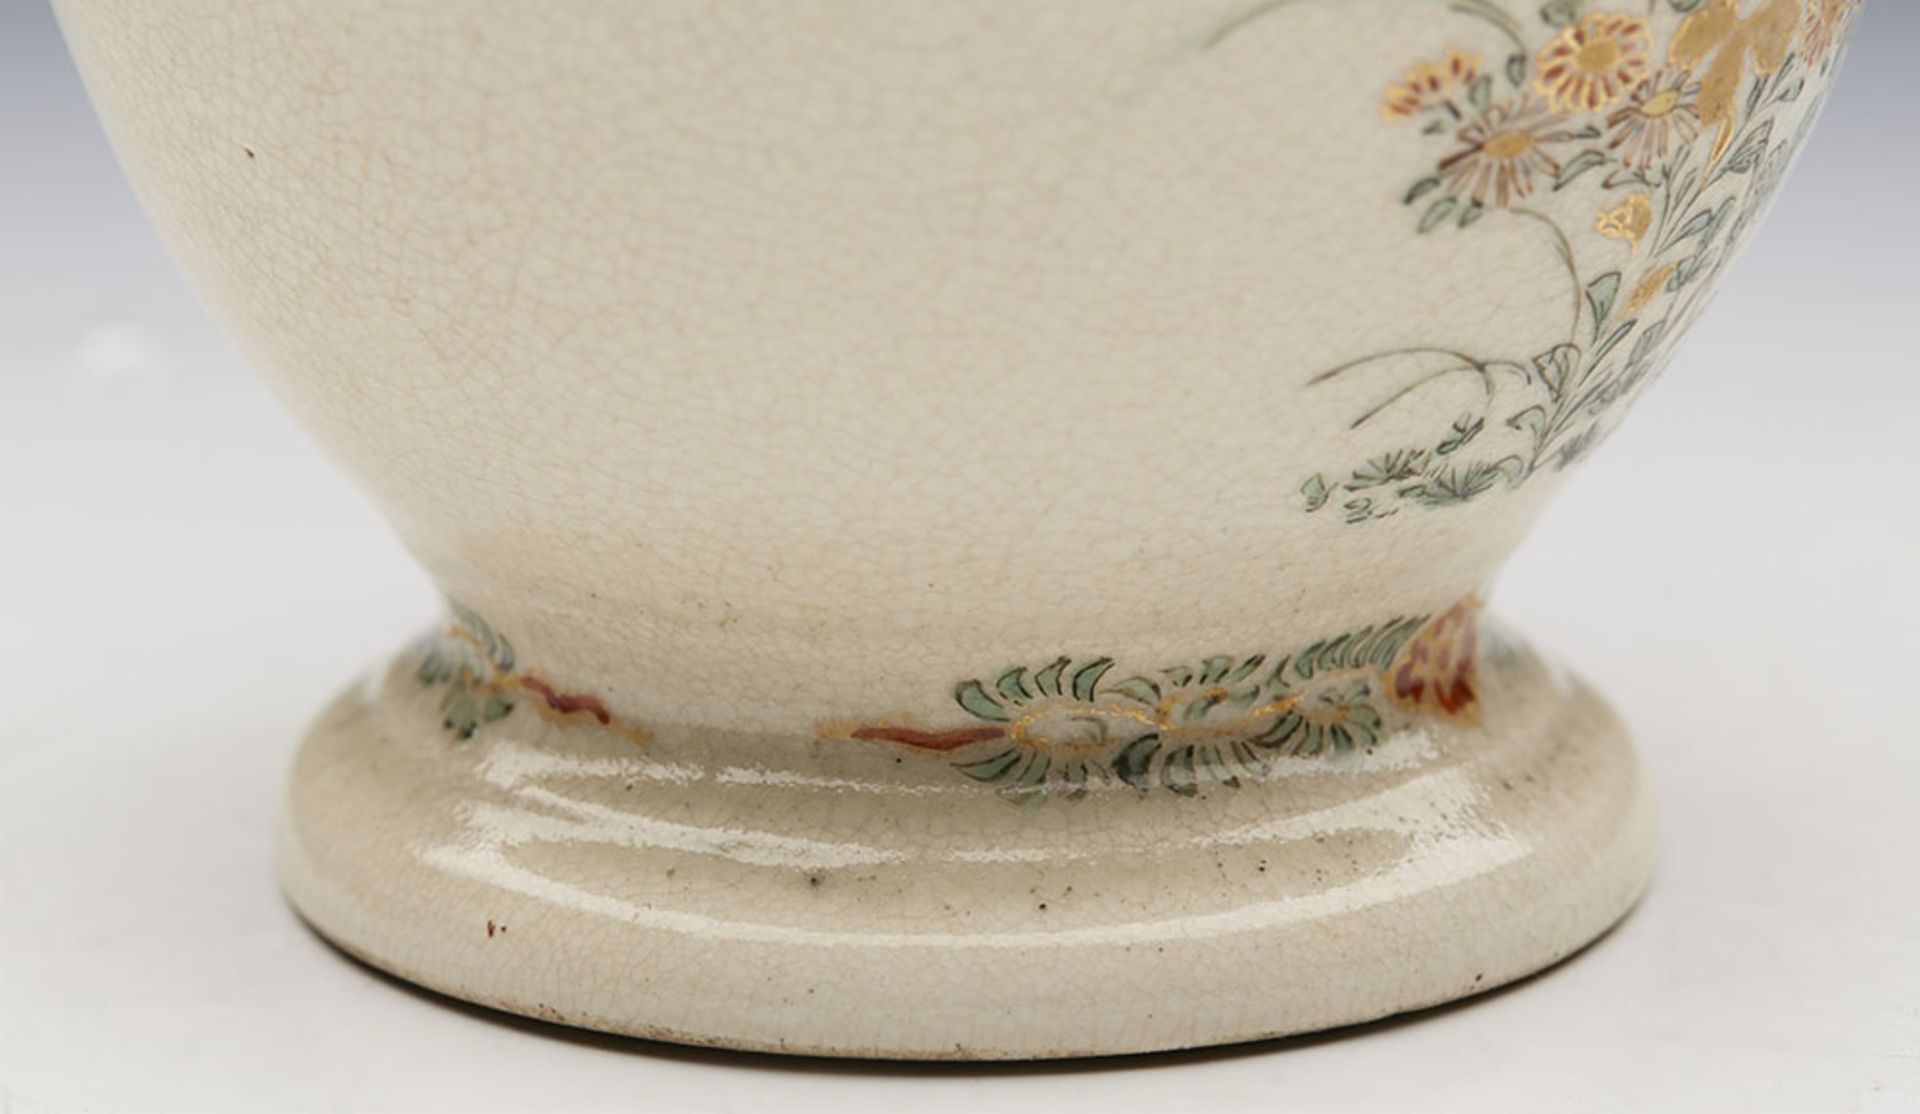 Antique/Vintage Japanese Satsuma Lidded Jar With Phoenix Bird - Image 5 of 8